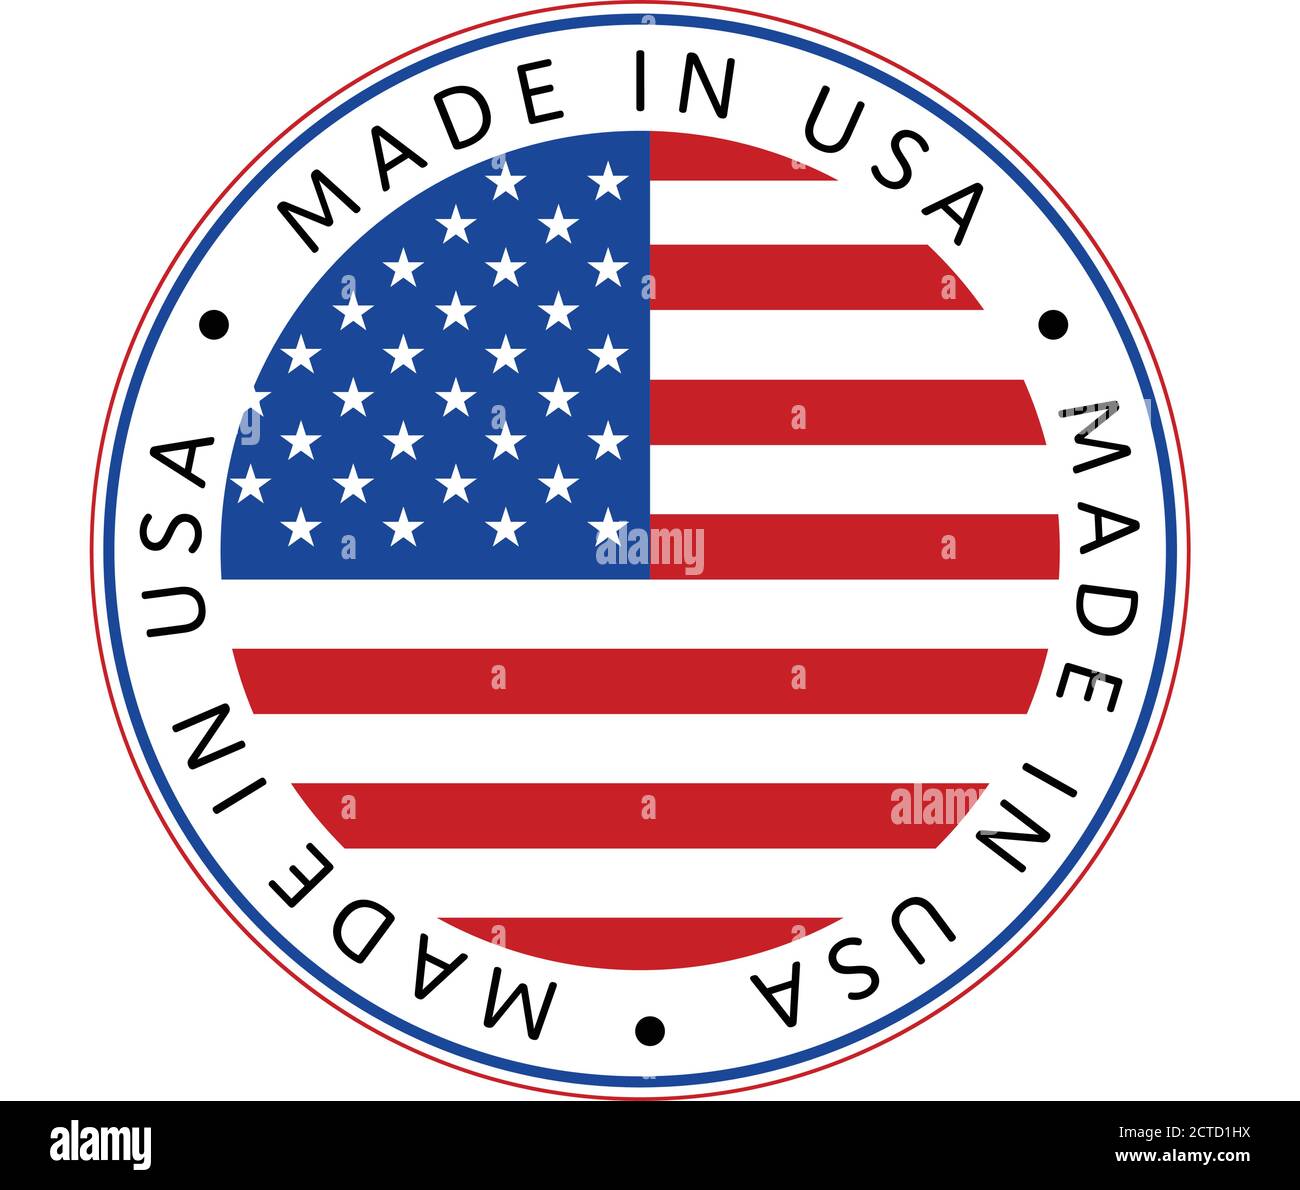 Festa nazionale americana. Icona Made in USA. BANDIERE AMERICANE con stelle americane, strisce e colori nazionali. Illustrazione Vettoriale